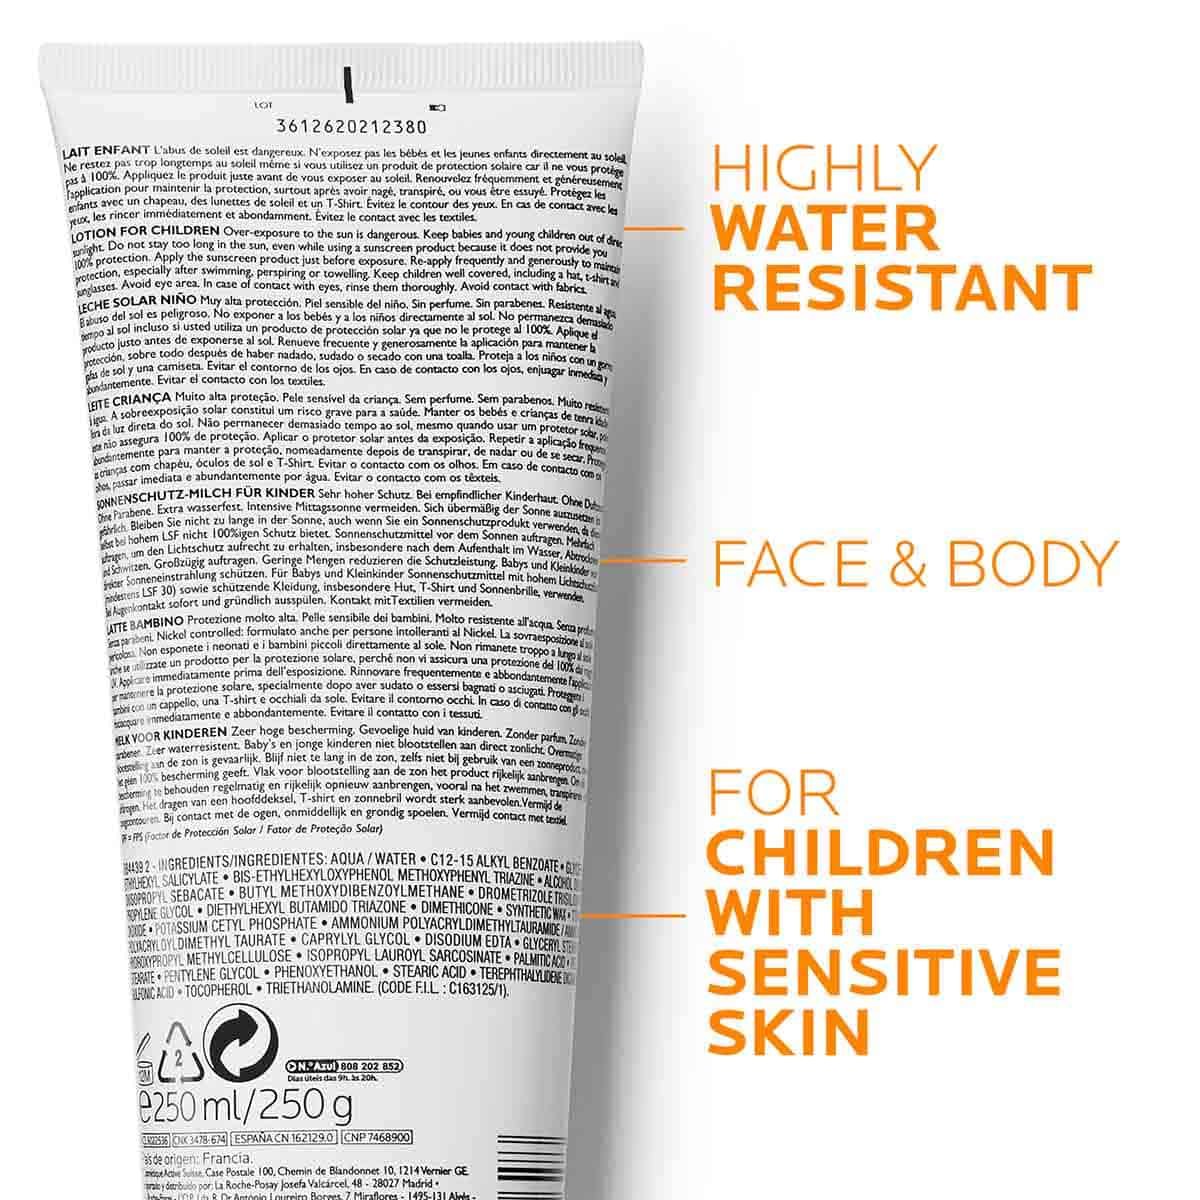 Retro di confezione Anthelios con indicazioni: Highly Water Resistant, Face & Body e For Children With Sensitive Skin